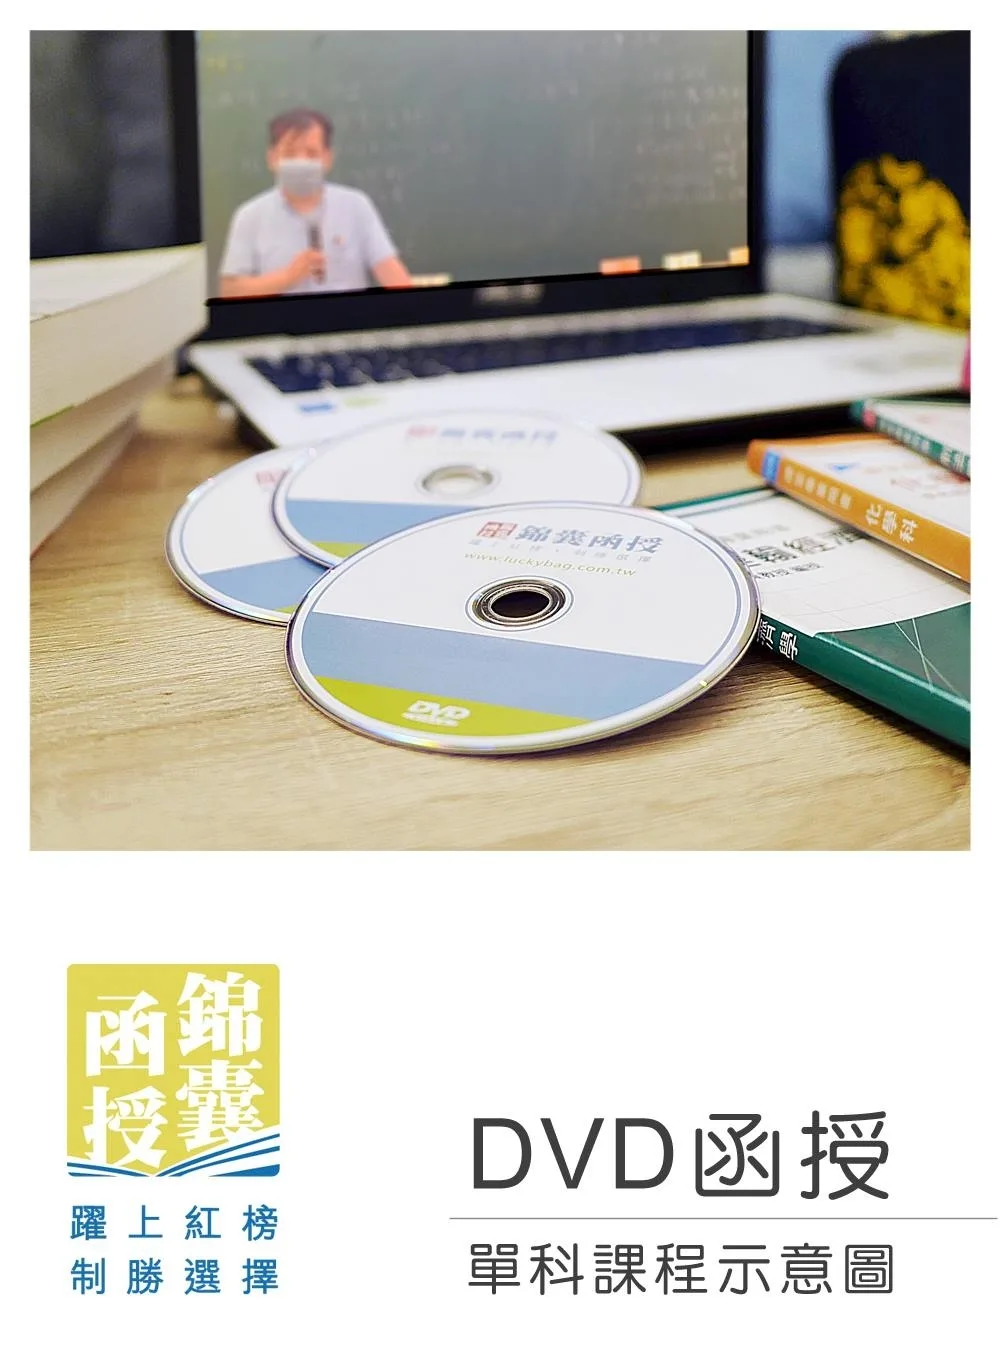 【DVD函授】原住民行政及法規-單科課程(111版)